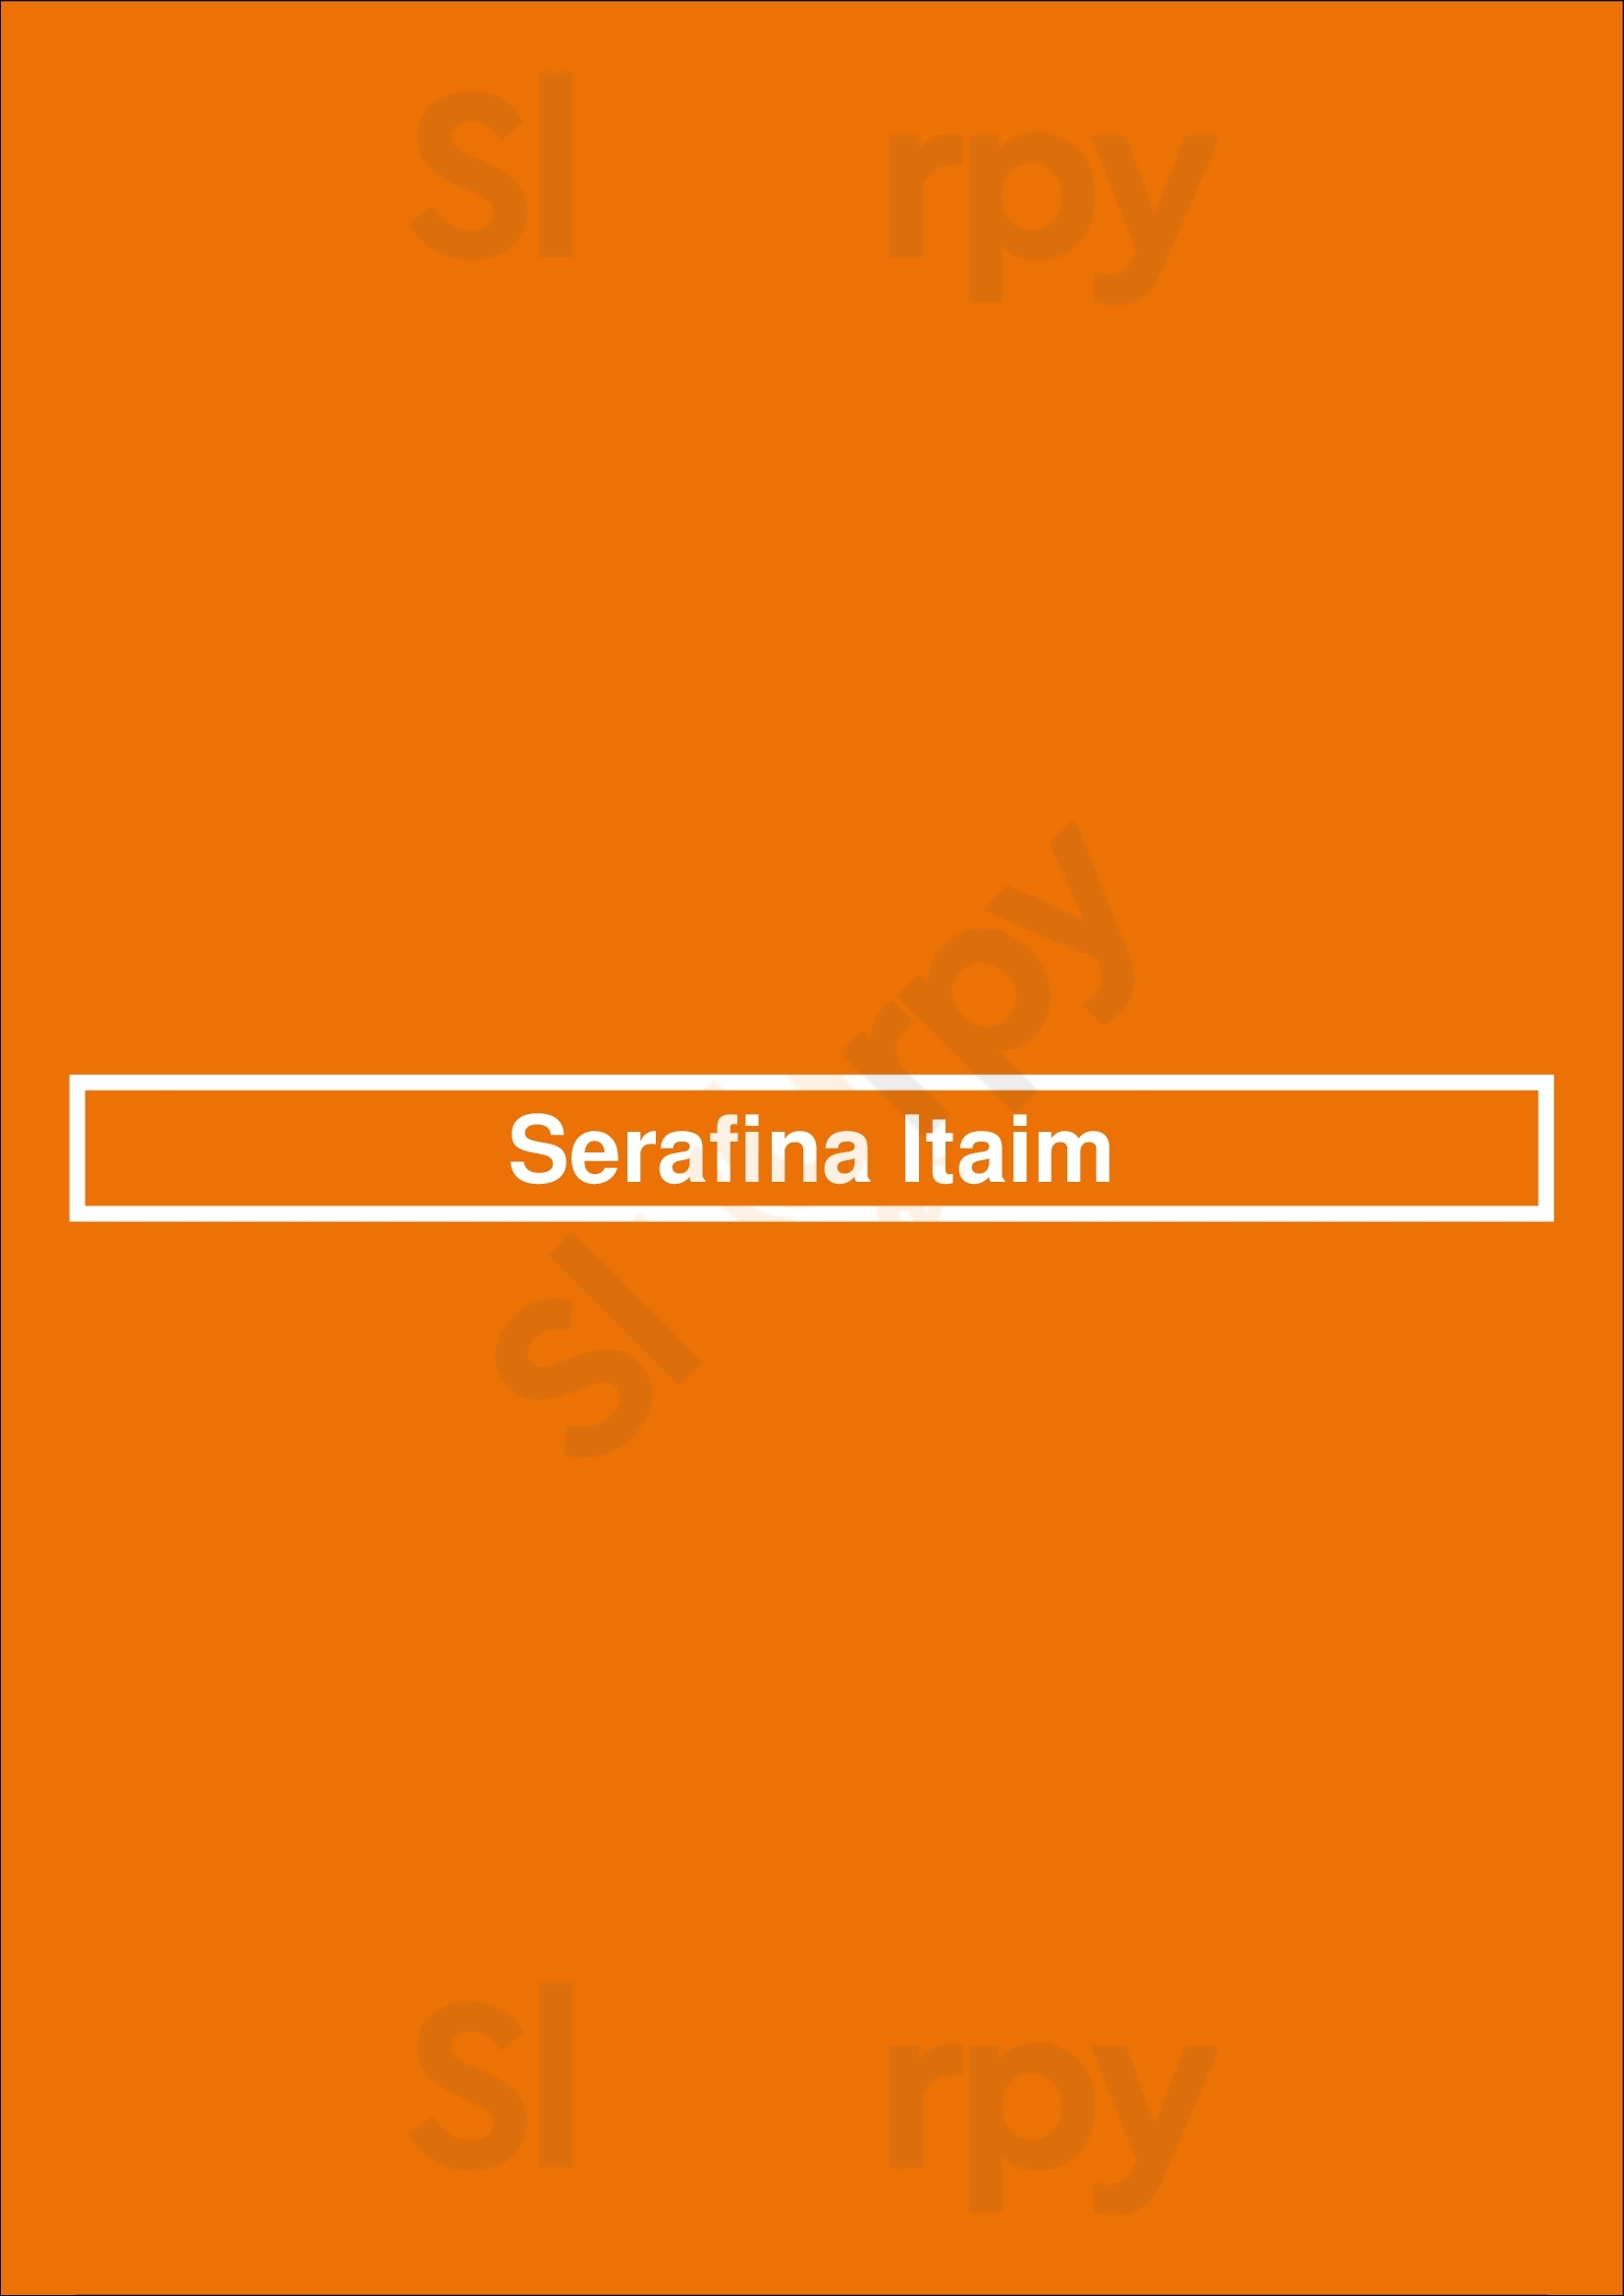 Serafina Itaim São Paulo Menu - 1